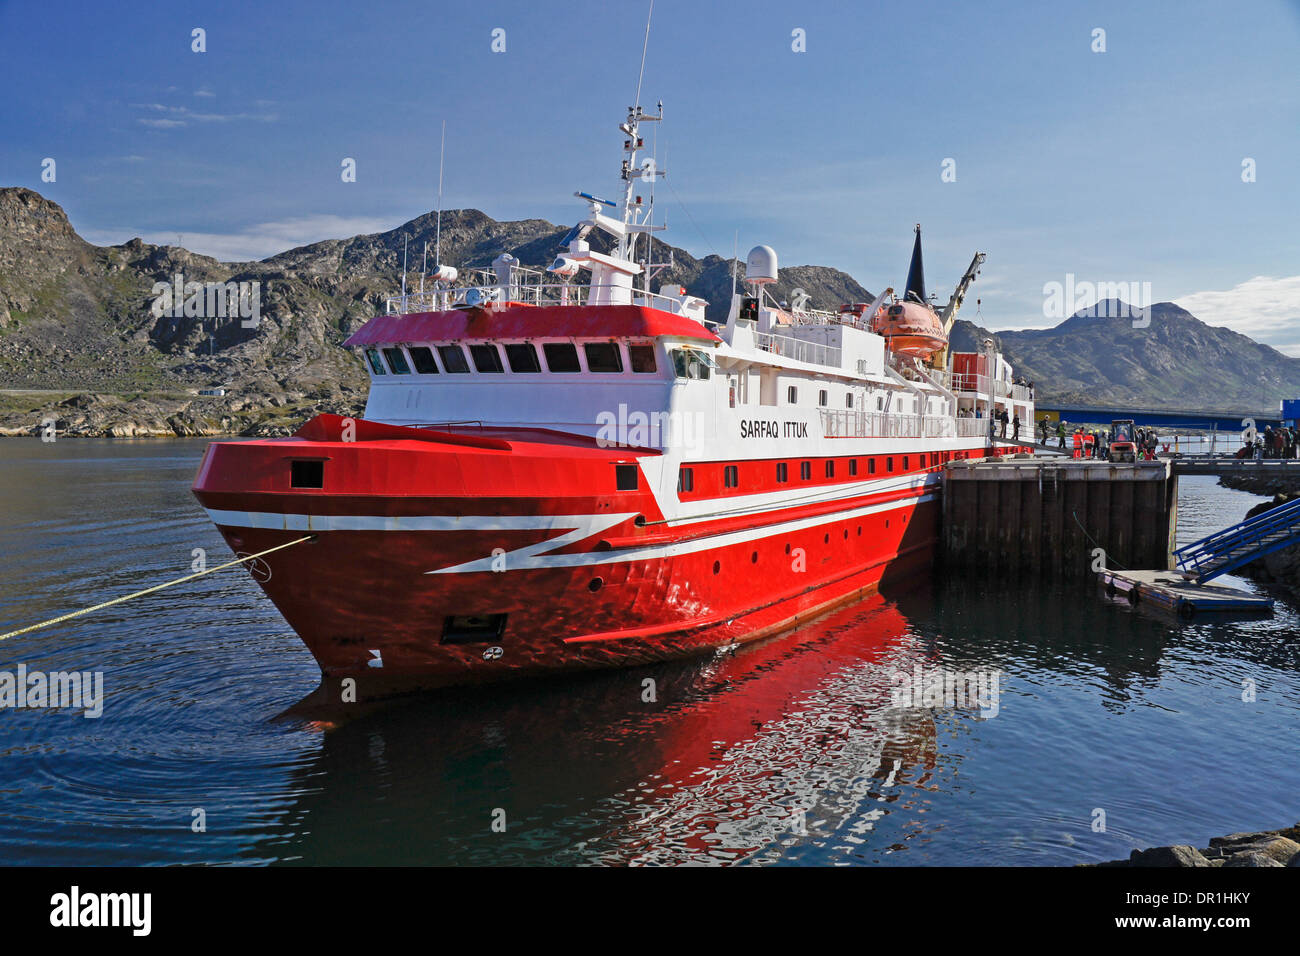 Costiere in traghetto Sarfaq Ittuk in porto, Sisimiut (Holsteinsborg), Groenlandia occidentale Foto Stock